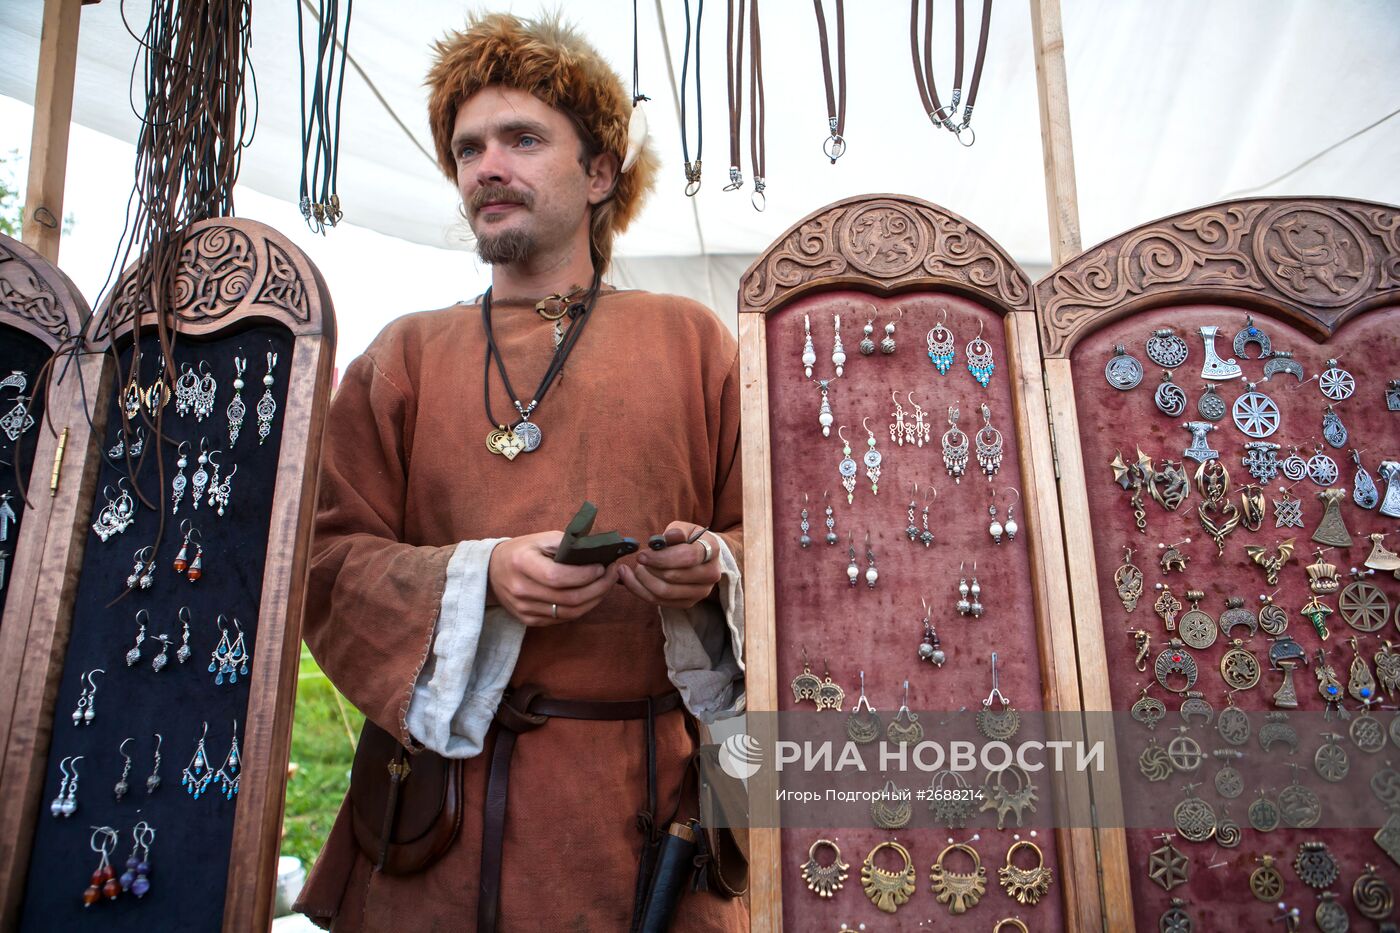 Фестиваль средневековой реконструкции "Онего. Легенды Севера" в Петрозаводске